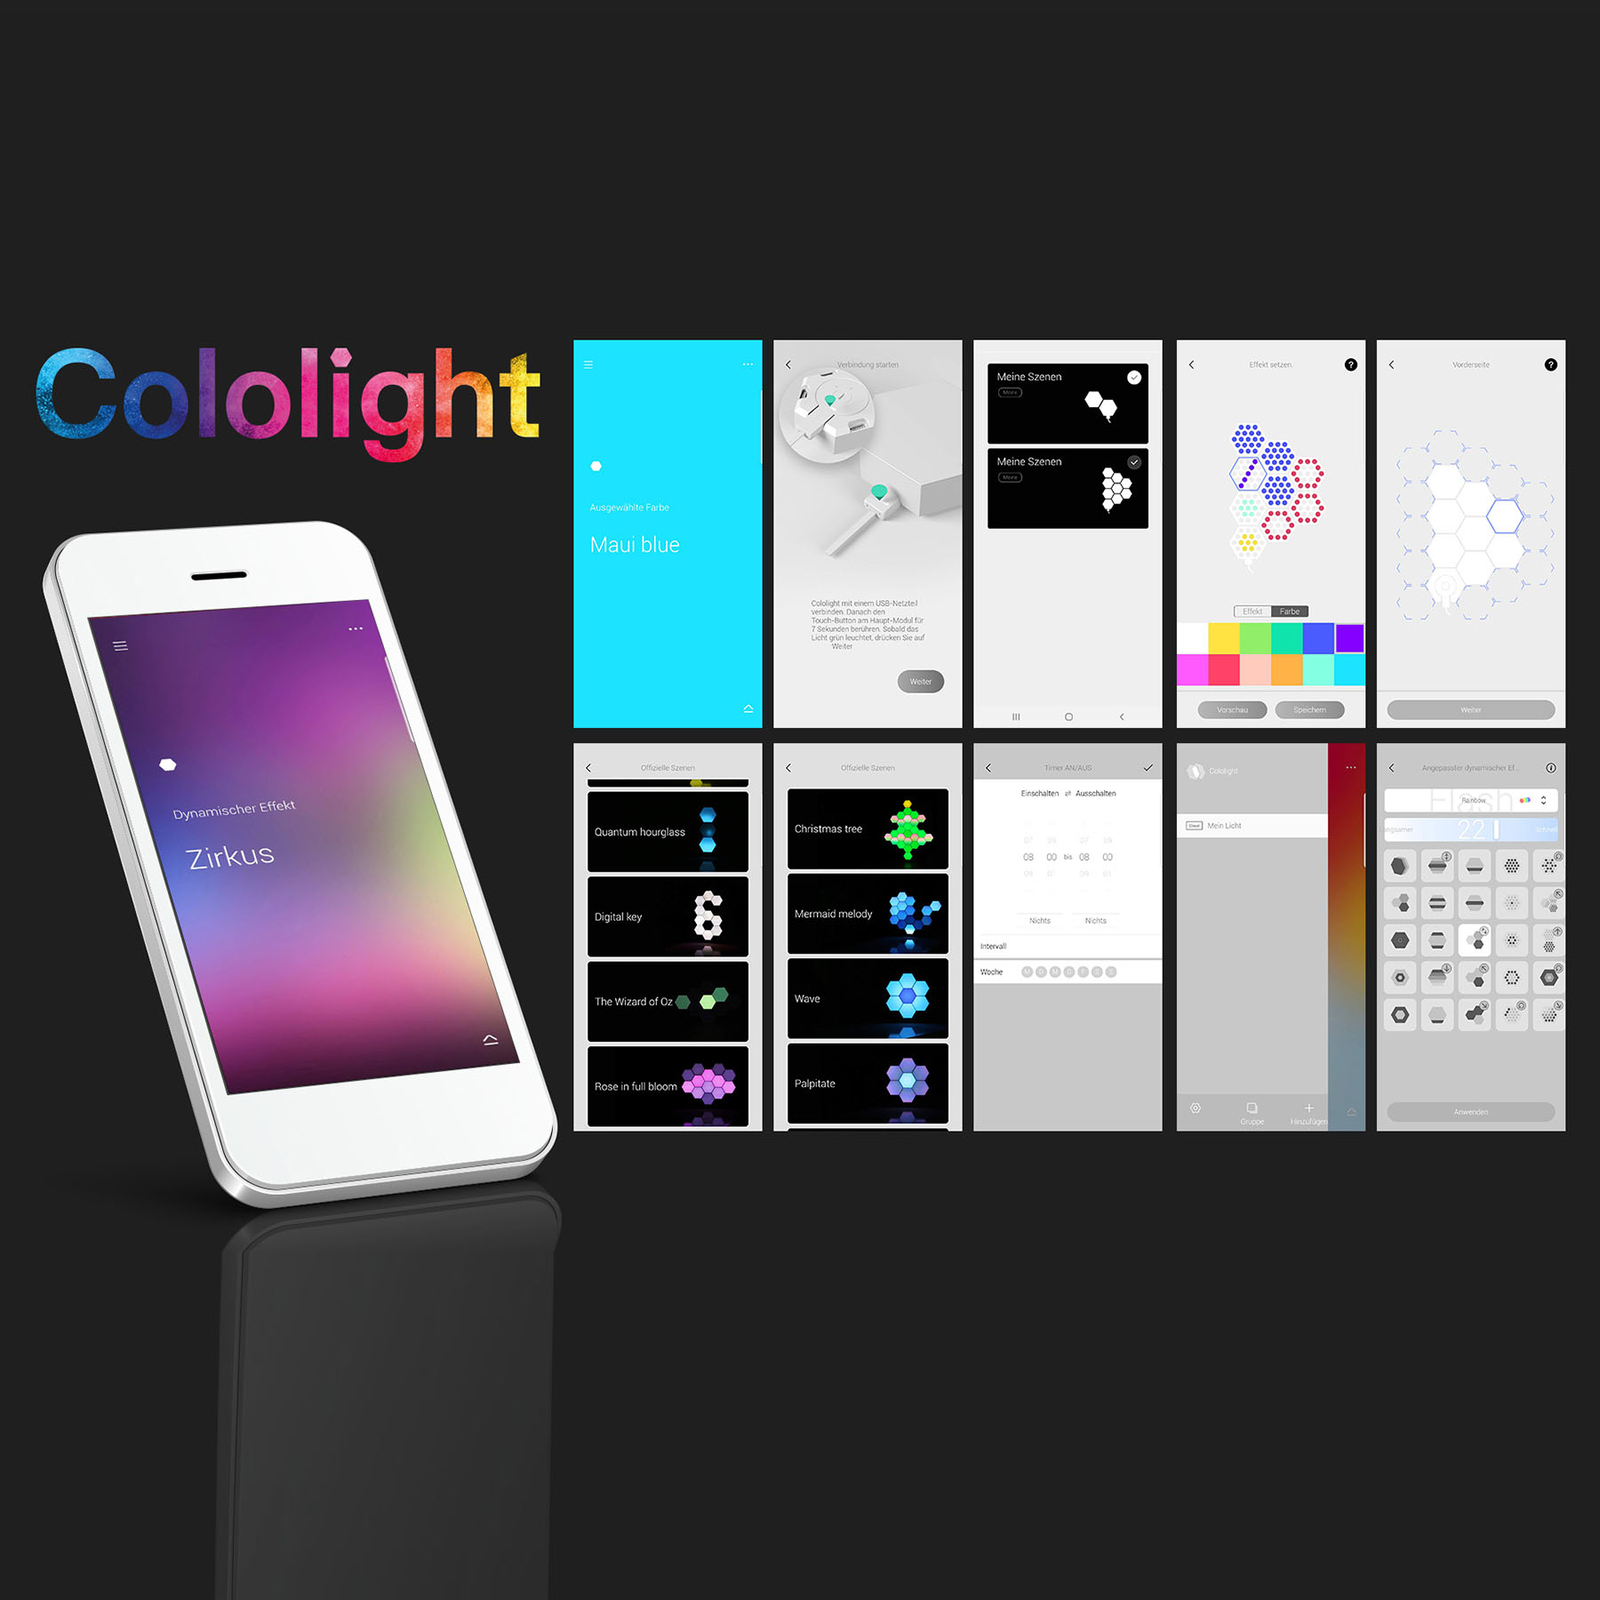 Cololight Plus Starter Set, 7 moduler med sockel